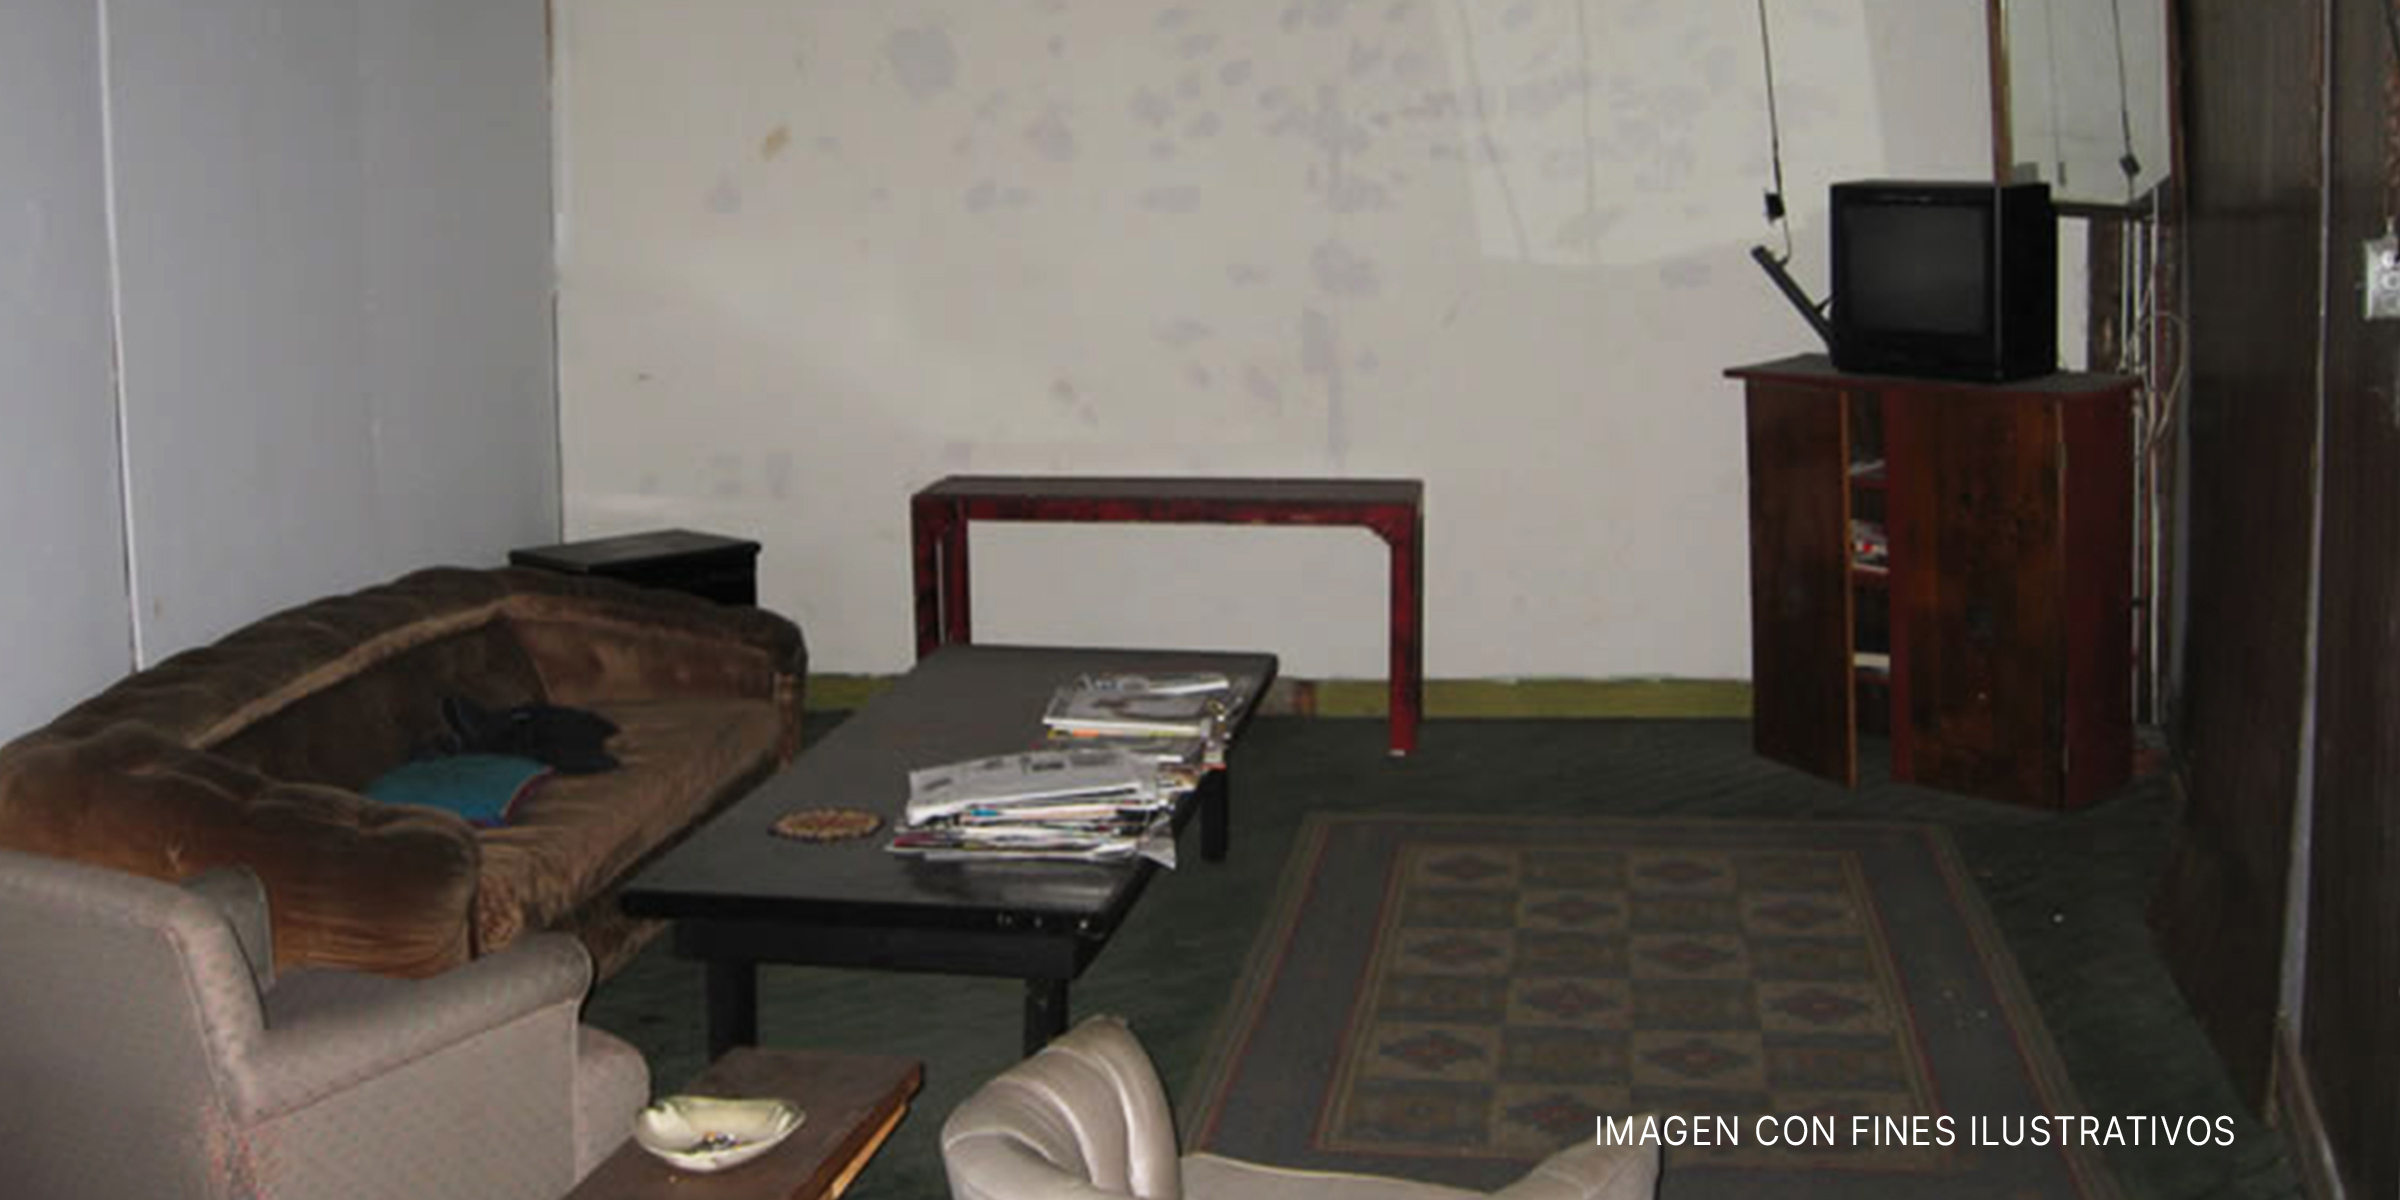 Muebles de salón ordenados en una habitación de sótano. | Foto: Flickr.com/Apparent (CC BY 2.0)